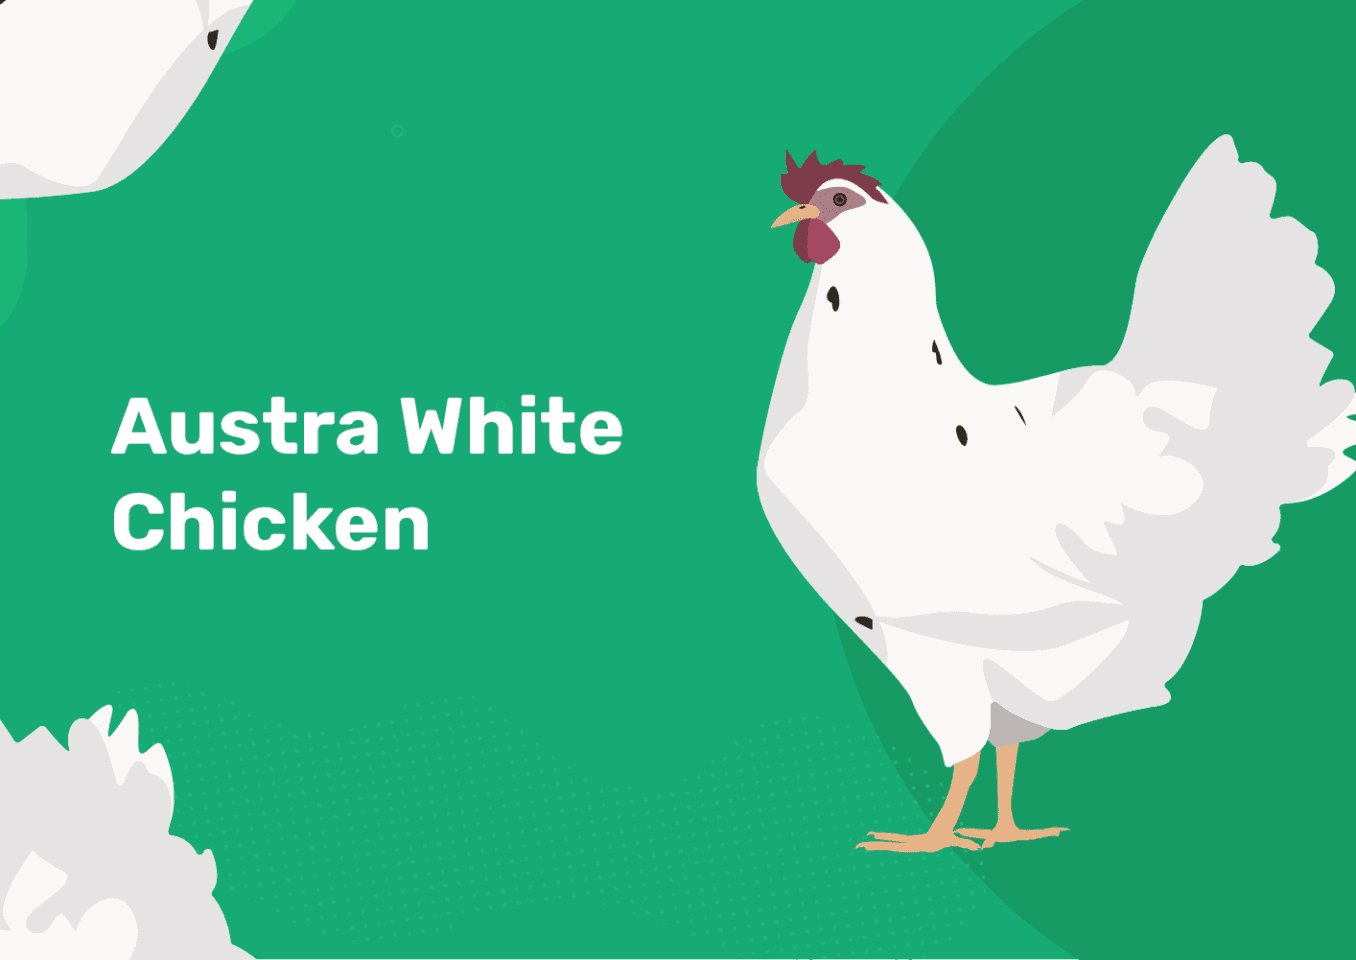 austra white chicken feature